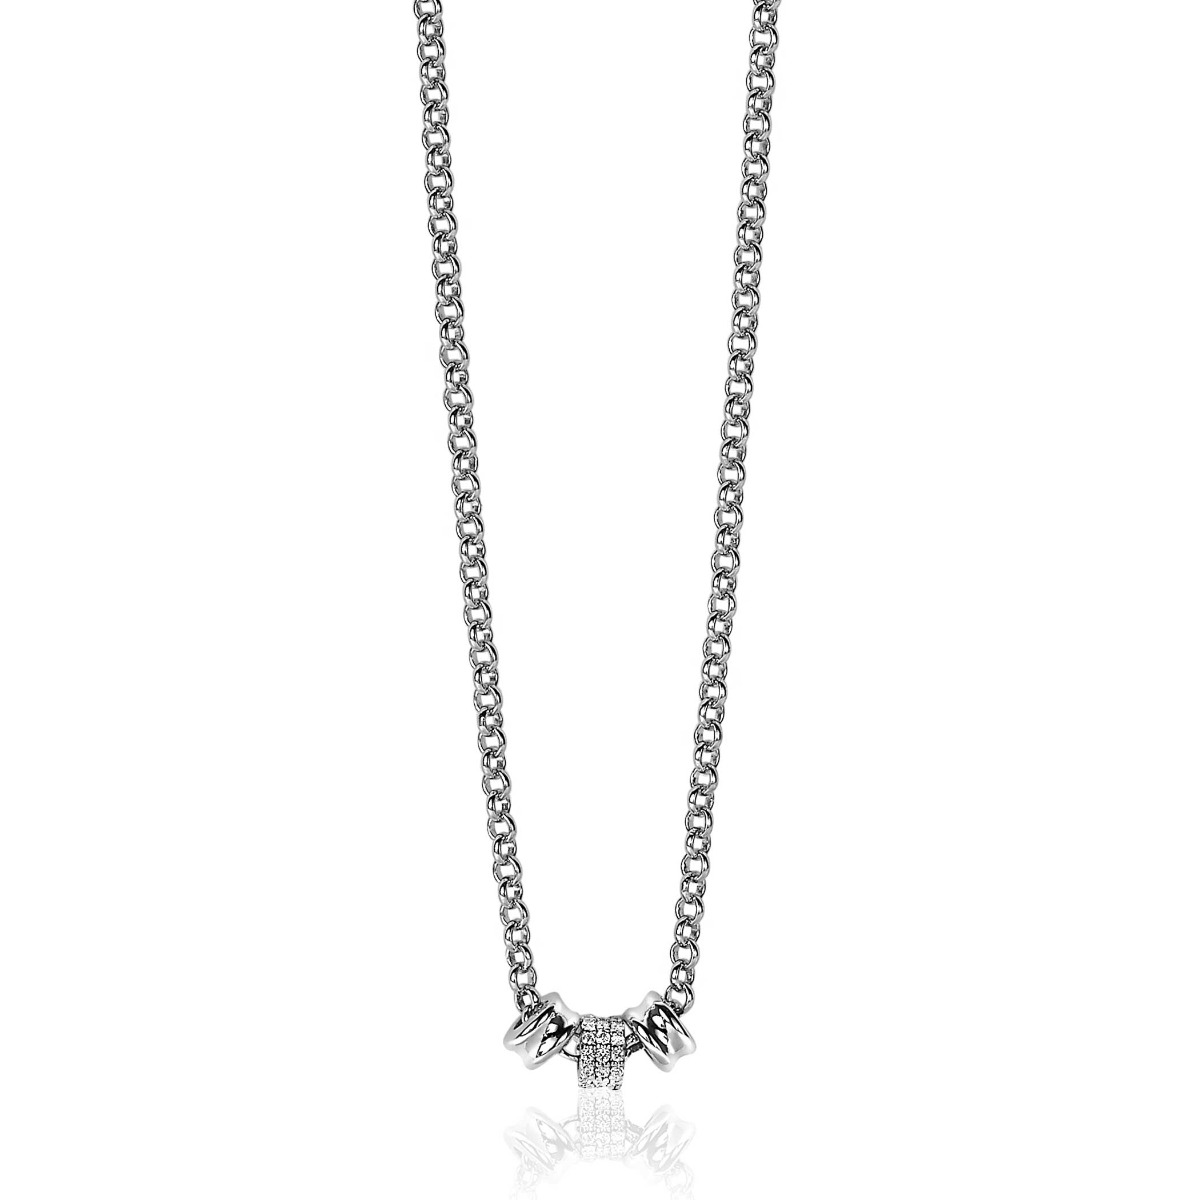 ZINZI Sterling Silver Necklace 45cm with 3 Round Chains by Dutch Designer Mart Visser MVC23